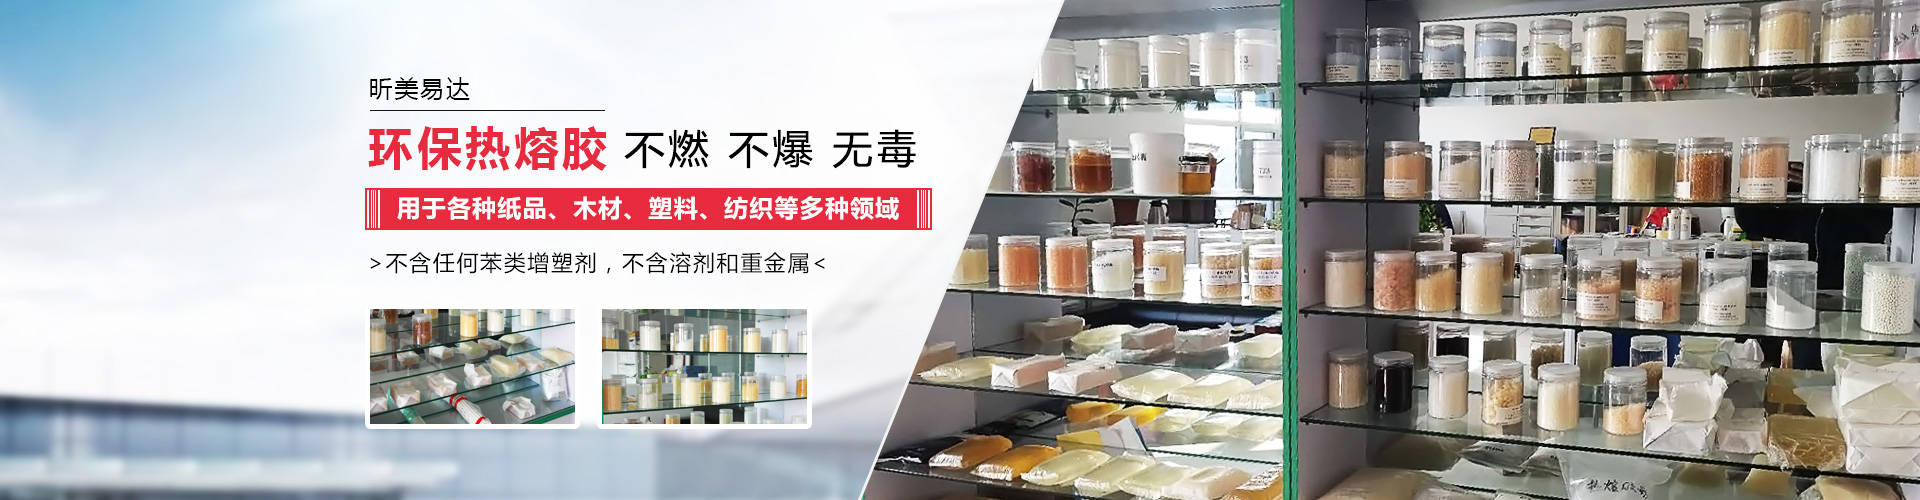 青岛昕美易达专业生产热熔胶,粘合剂等系列产品.